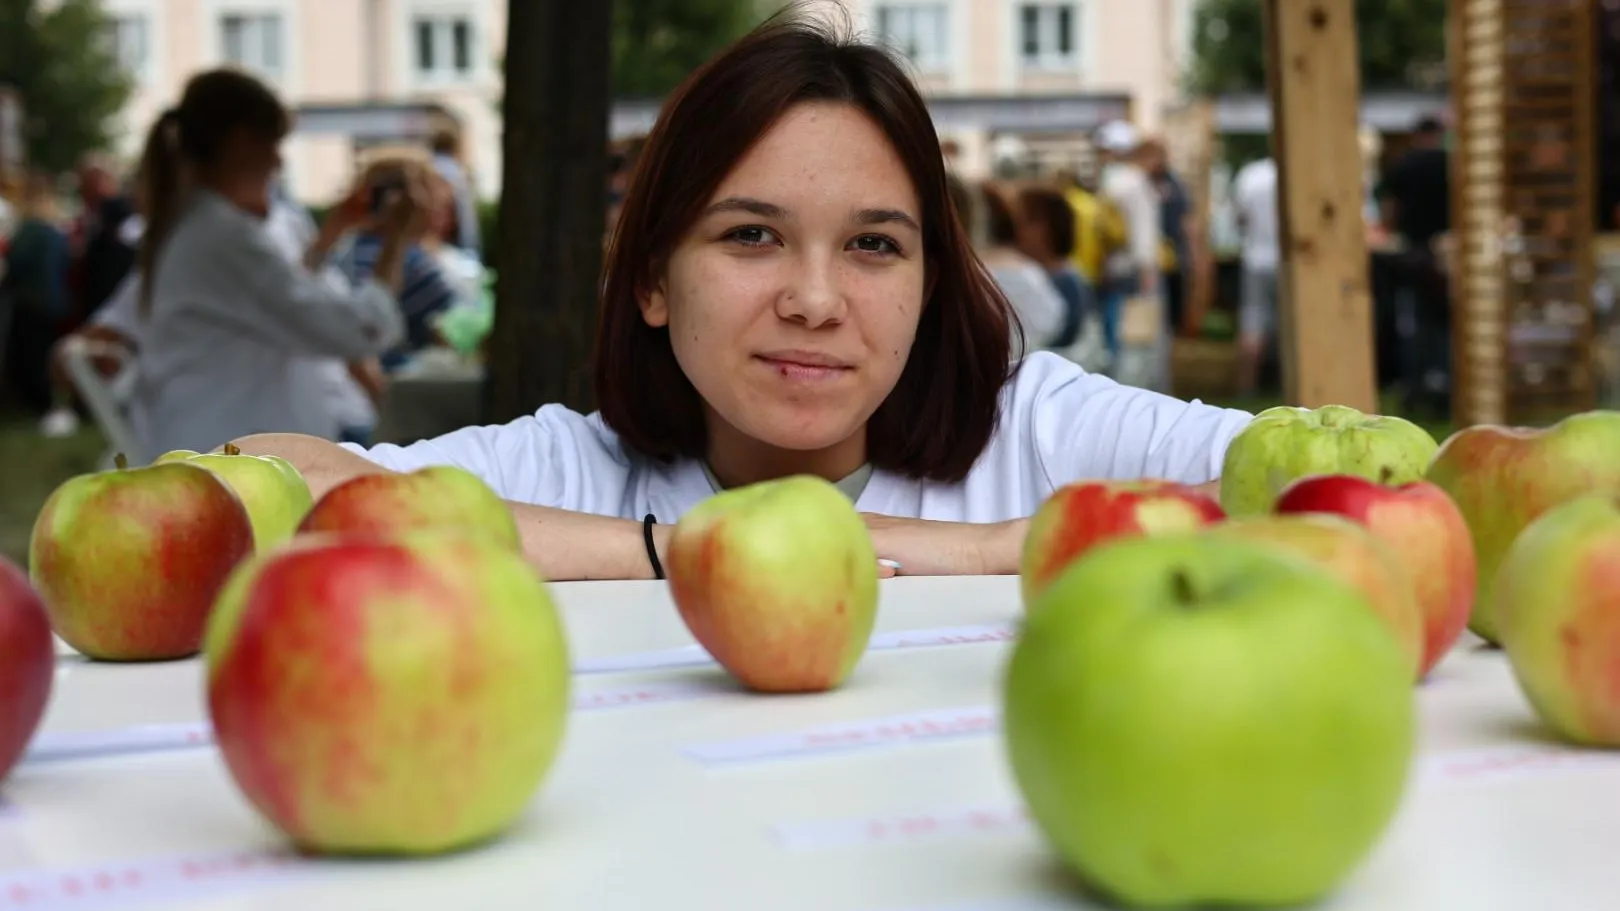 Международный яблочно-книжный фестиваль пройдет в сентябре в подмосковной Коломне